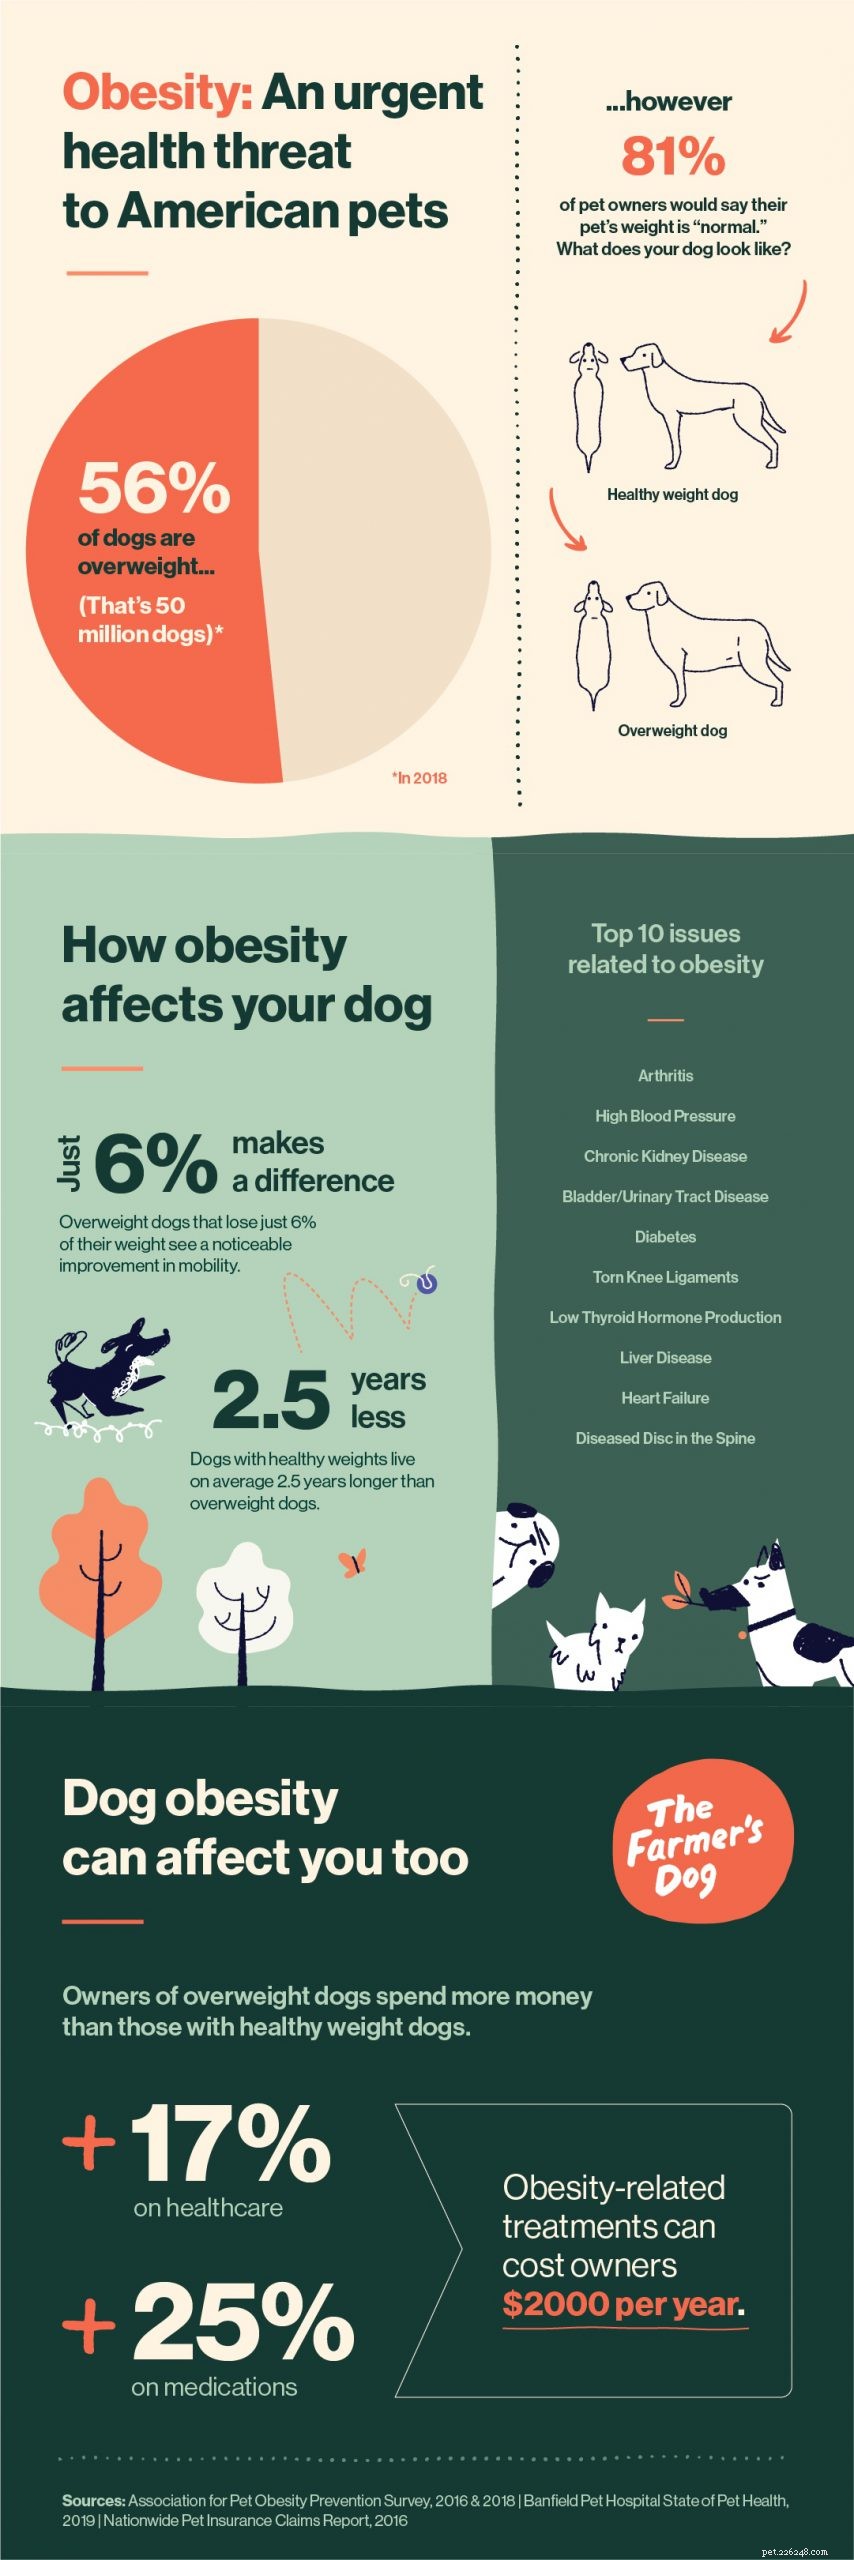 Obesidade em cães:uma enorme ameaça à saúde escondida à vista